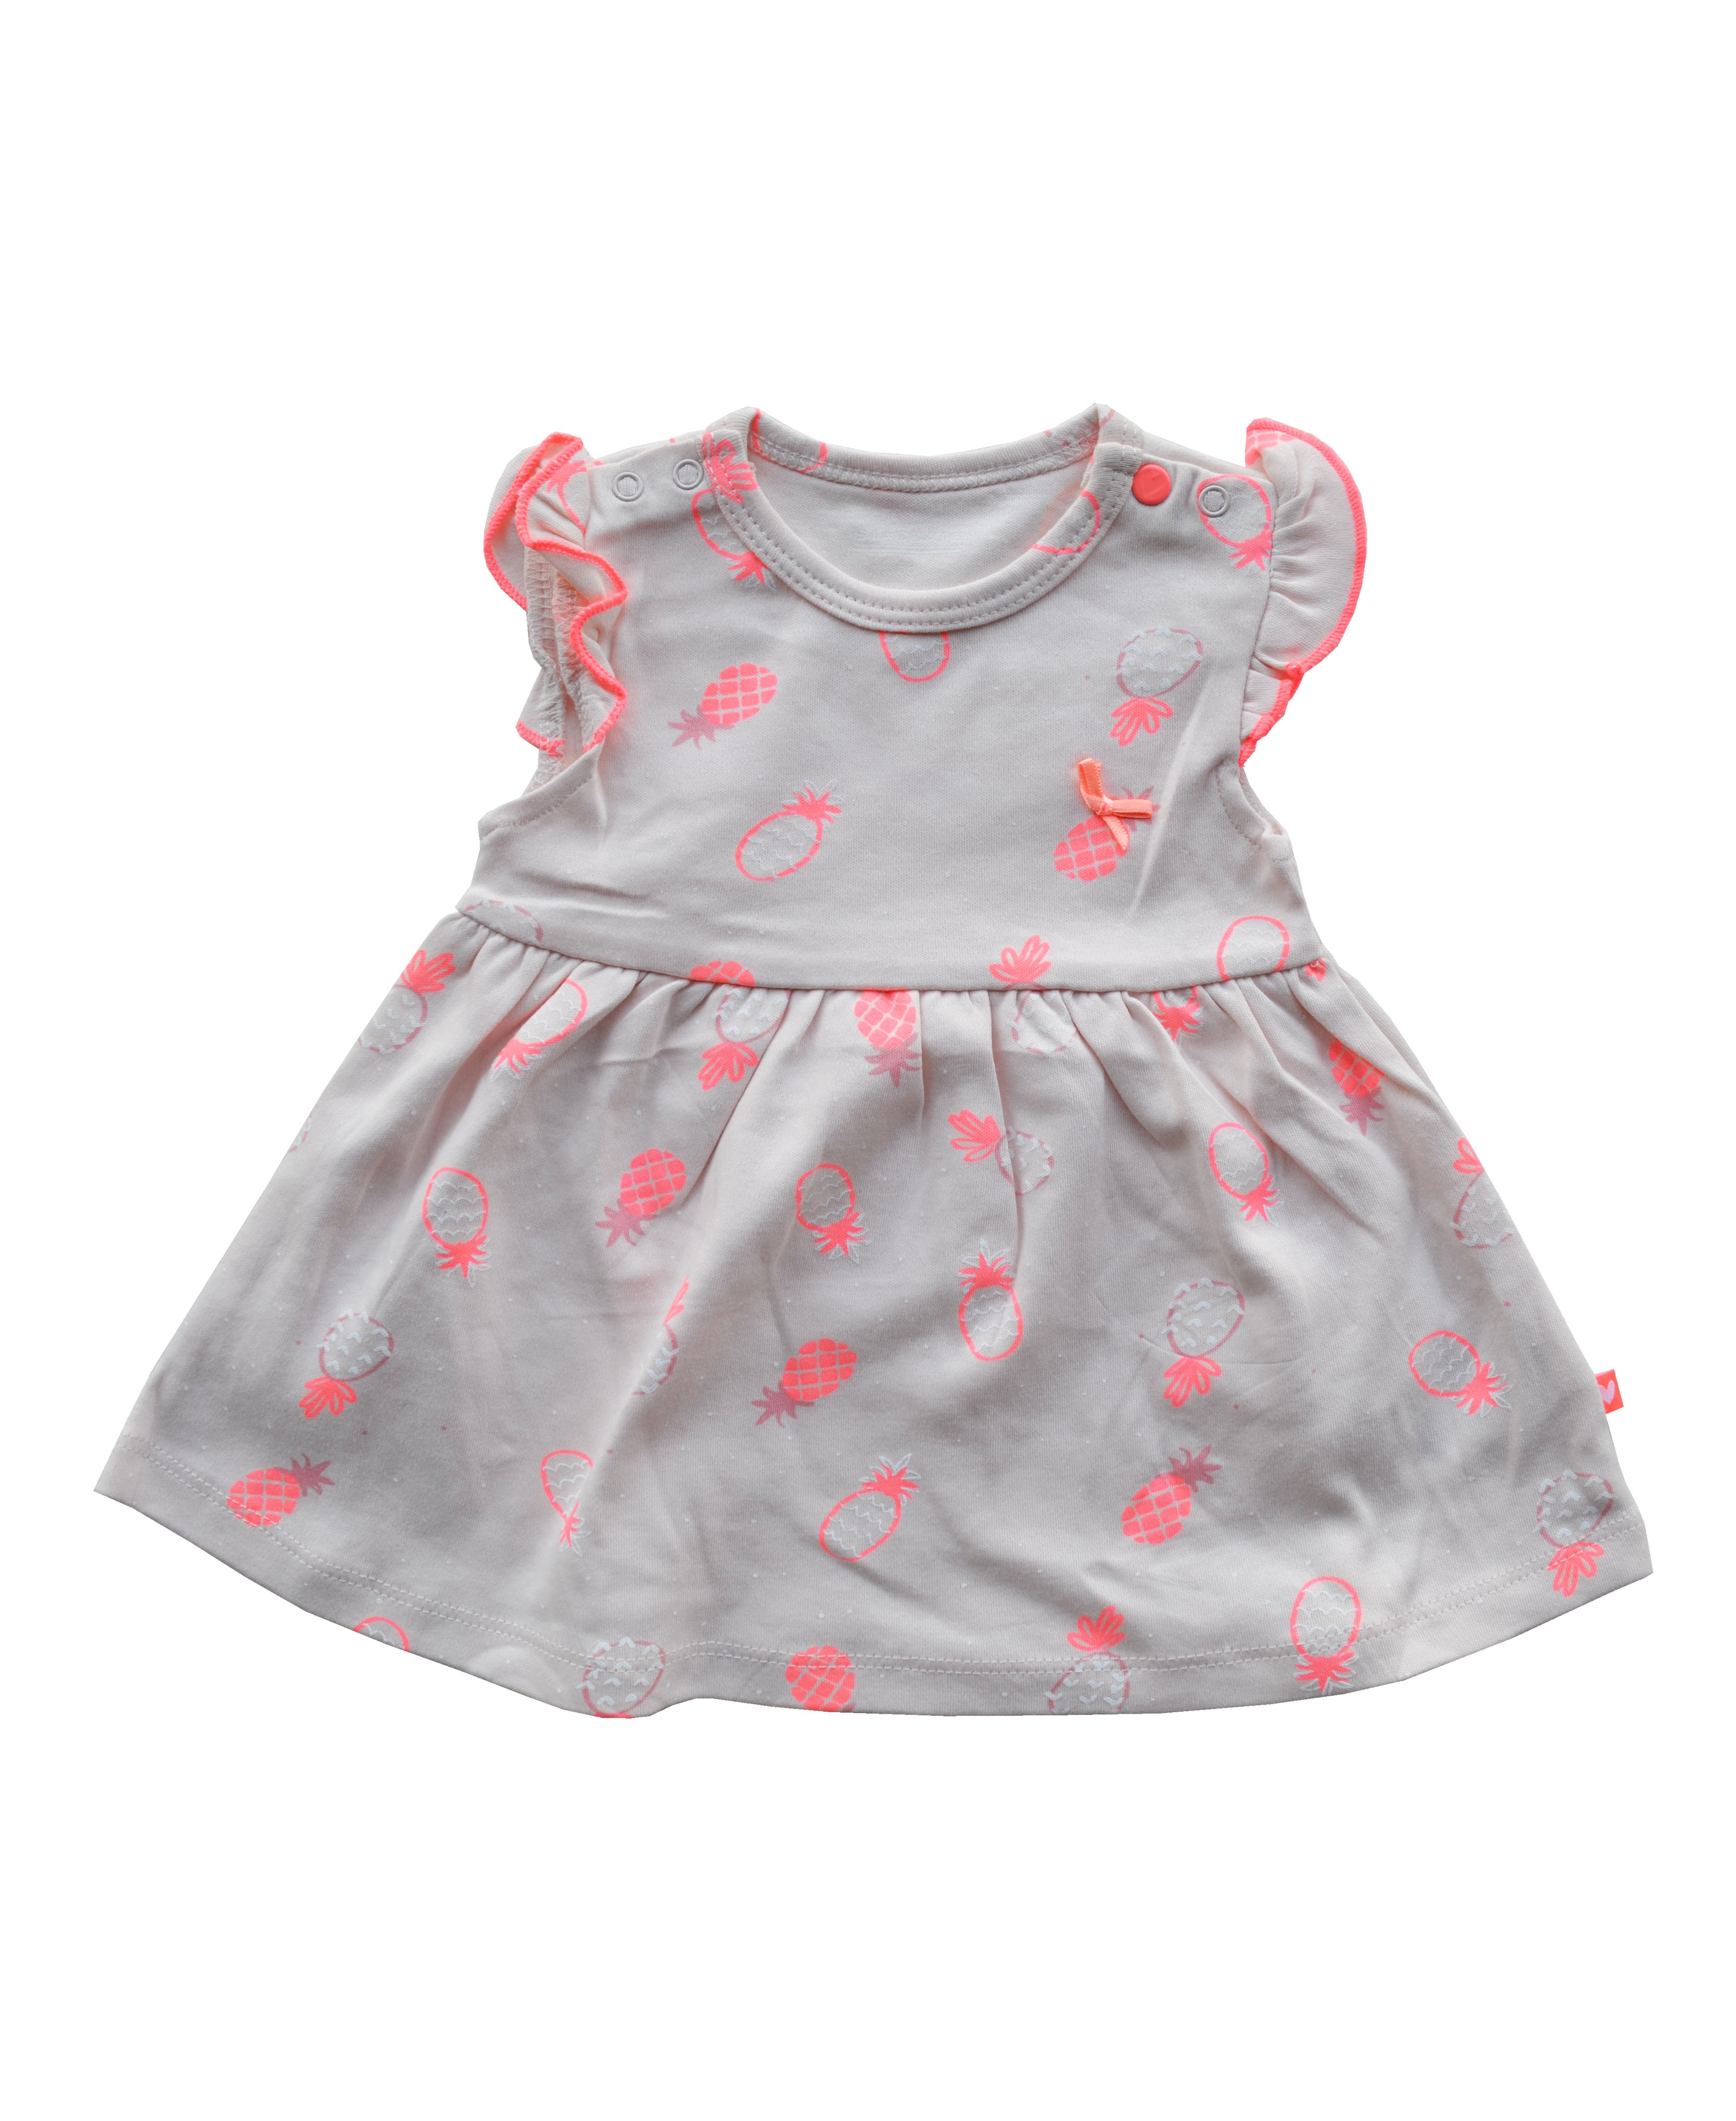 Babeez | Pink Dress with Pineapple print (100% Cotton Interlock Biowash) undefined